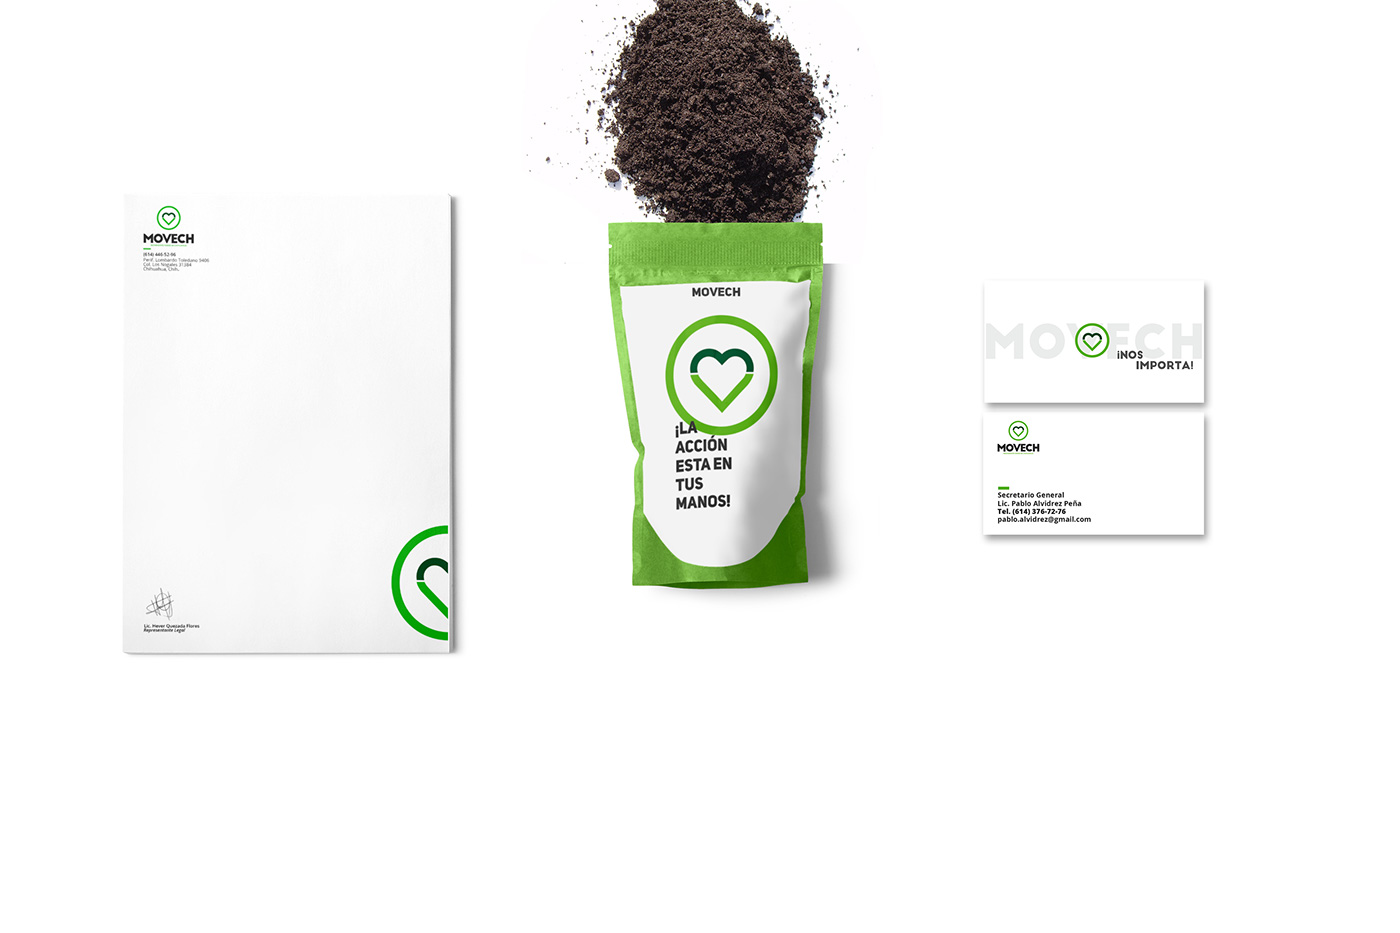 asociación imagen corporativa rediseño grafico ecologia proyecto design graphic branding  marketing  